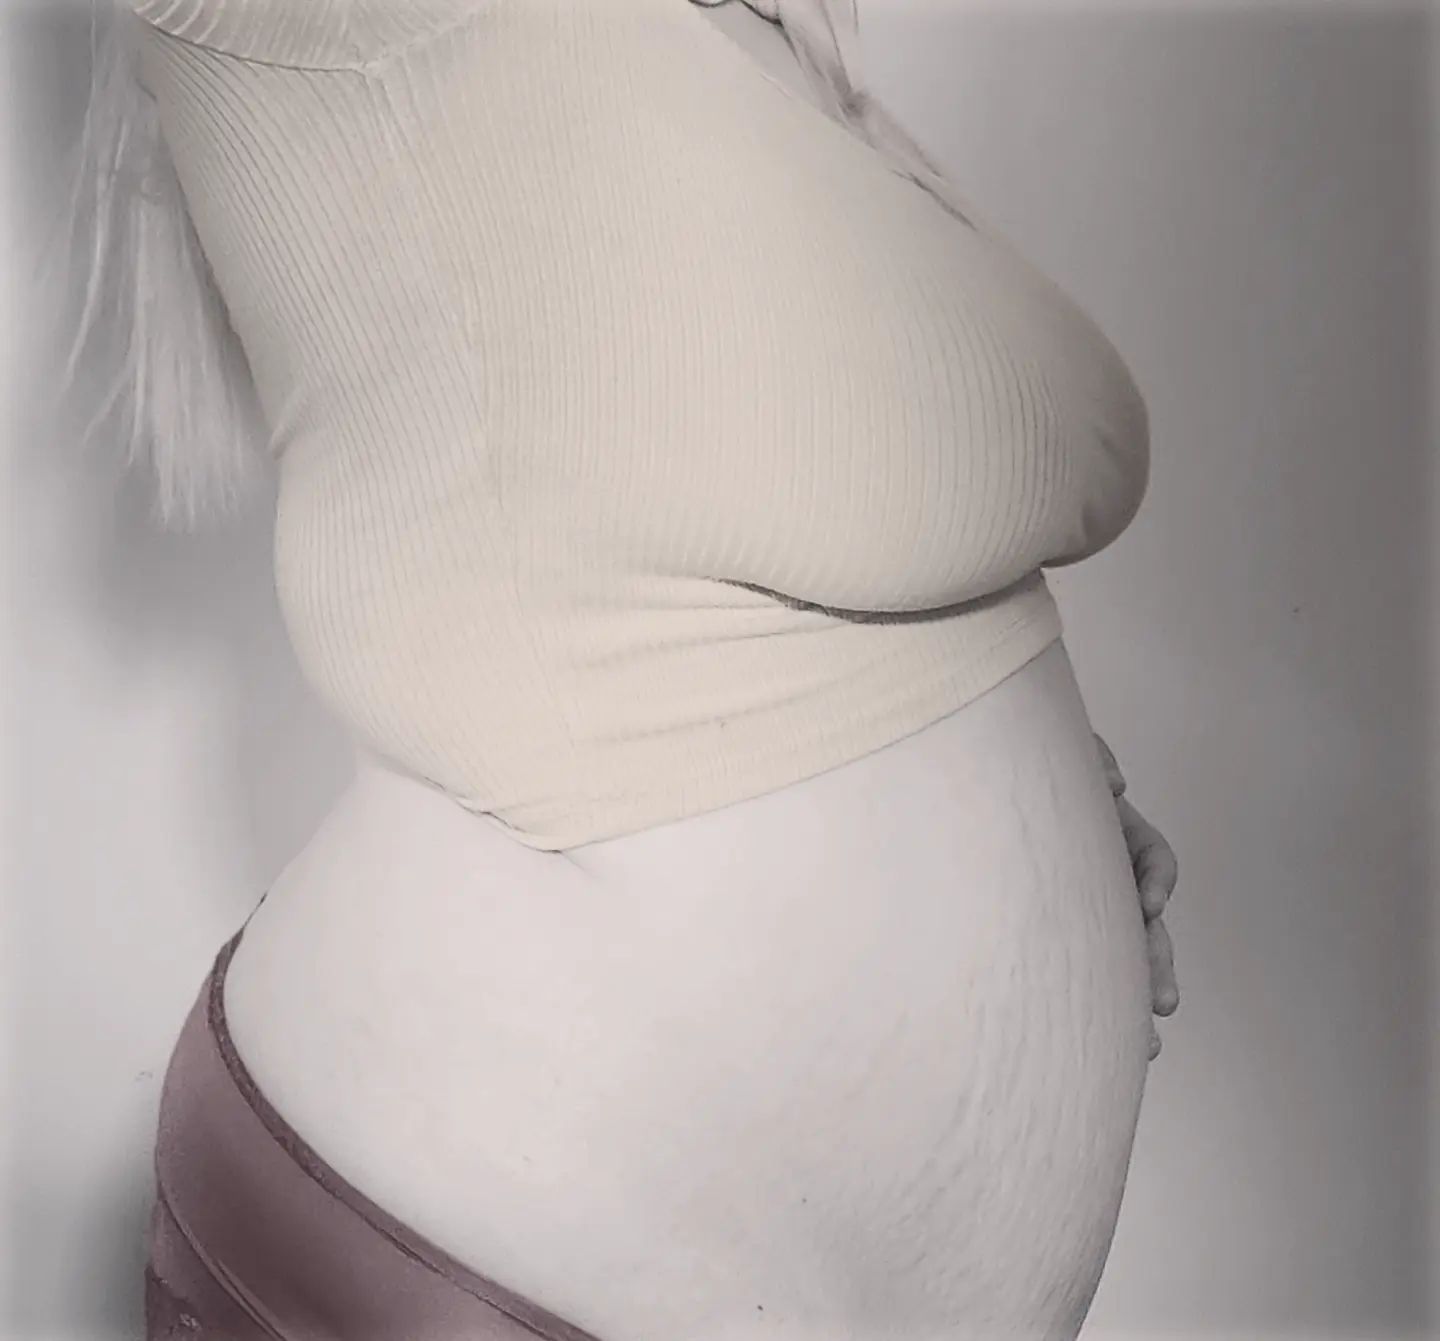 Oon pitänytkin joulun jälkeen hiljaiseloa täällä instagramissa, kun on ollut tällainen masun kasvatusprojekti 🤭🤰🏼

Mun Maksulliset Sivut on pyörinyt koko ajan, ja pyörii jatkossakin. Tänne päivittelen kun muistan ja ehdin 😄

#petiprojekti #sisällöntuottaja #raskaus #raskaana #pregnancy #momtobe #tampere #huomiohuora